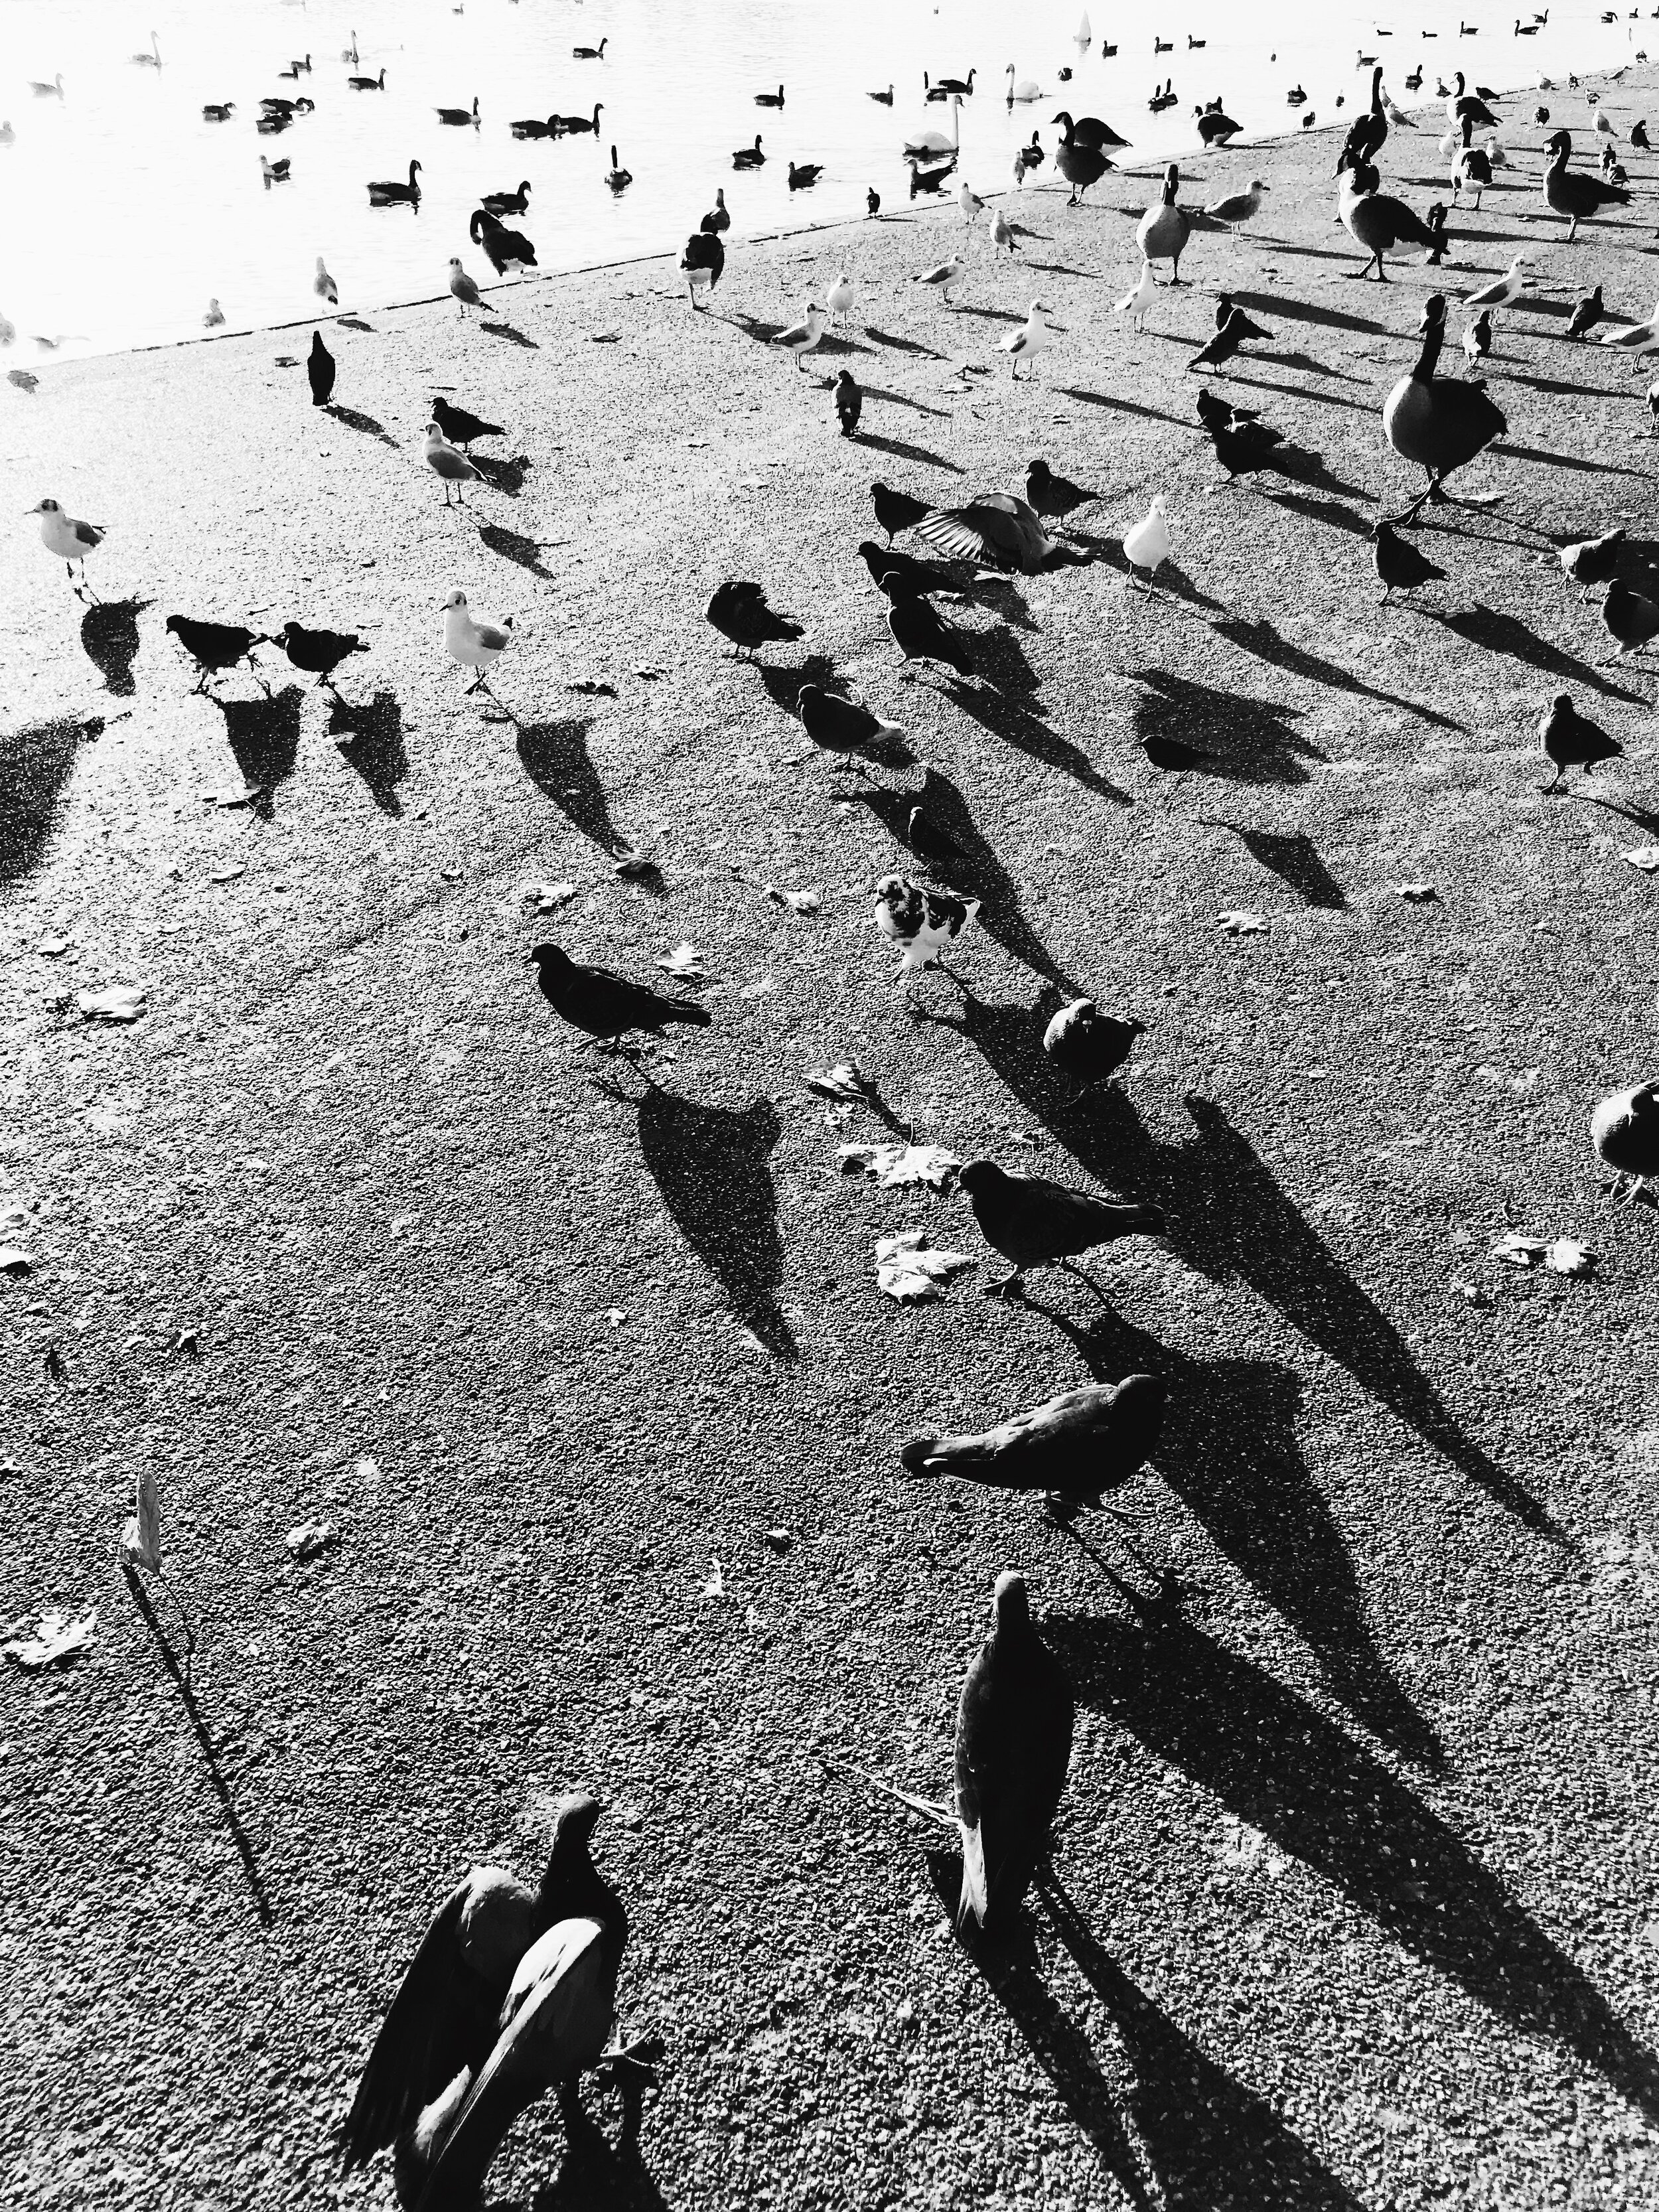 Birds And Their Shadows